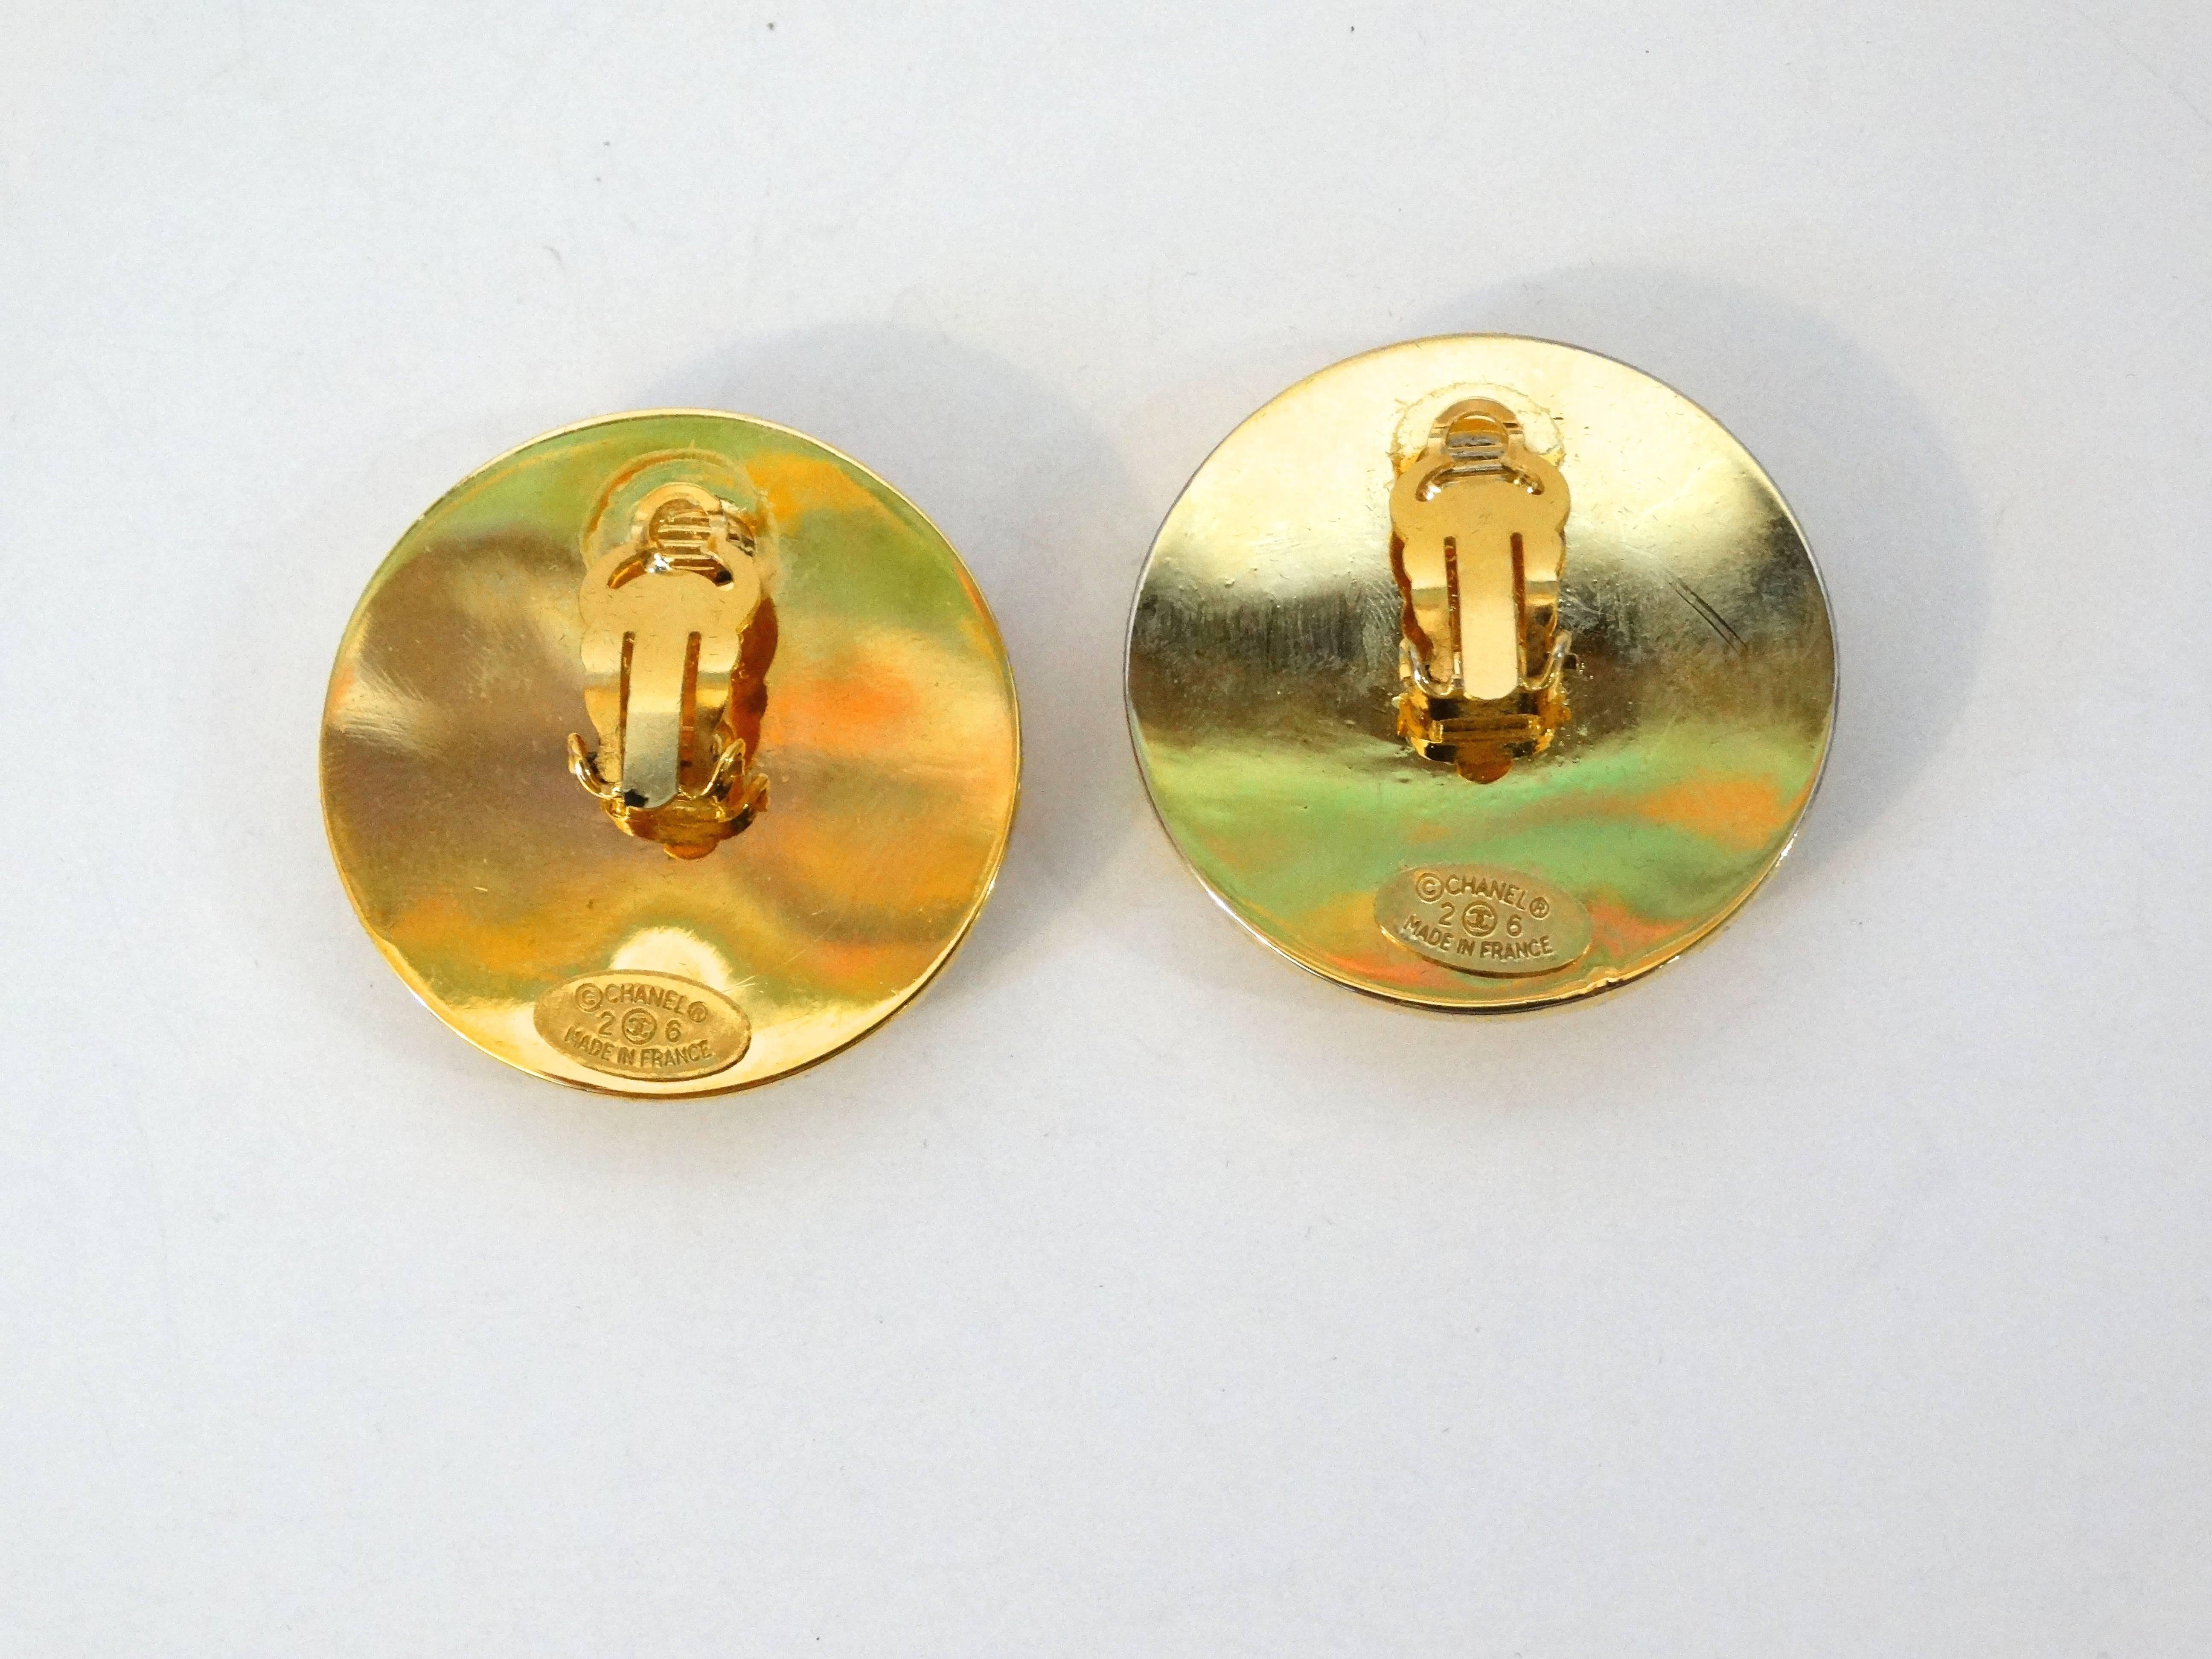 Chanel-Clip-Ohrringe aus den 1980er Jahren. Diese klassischen und zeitlosen Ohrringe bestehen aus zwei Goldschichten (eine strukturiert und eine massiv) mit dem goldenen CC-Logo über einem matten Schwarz. In ausgezeichnetem Vintage-Zustand, signiert